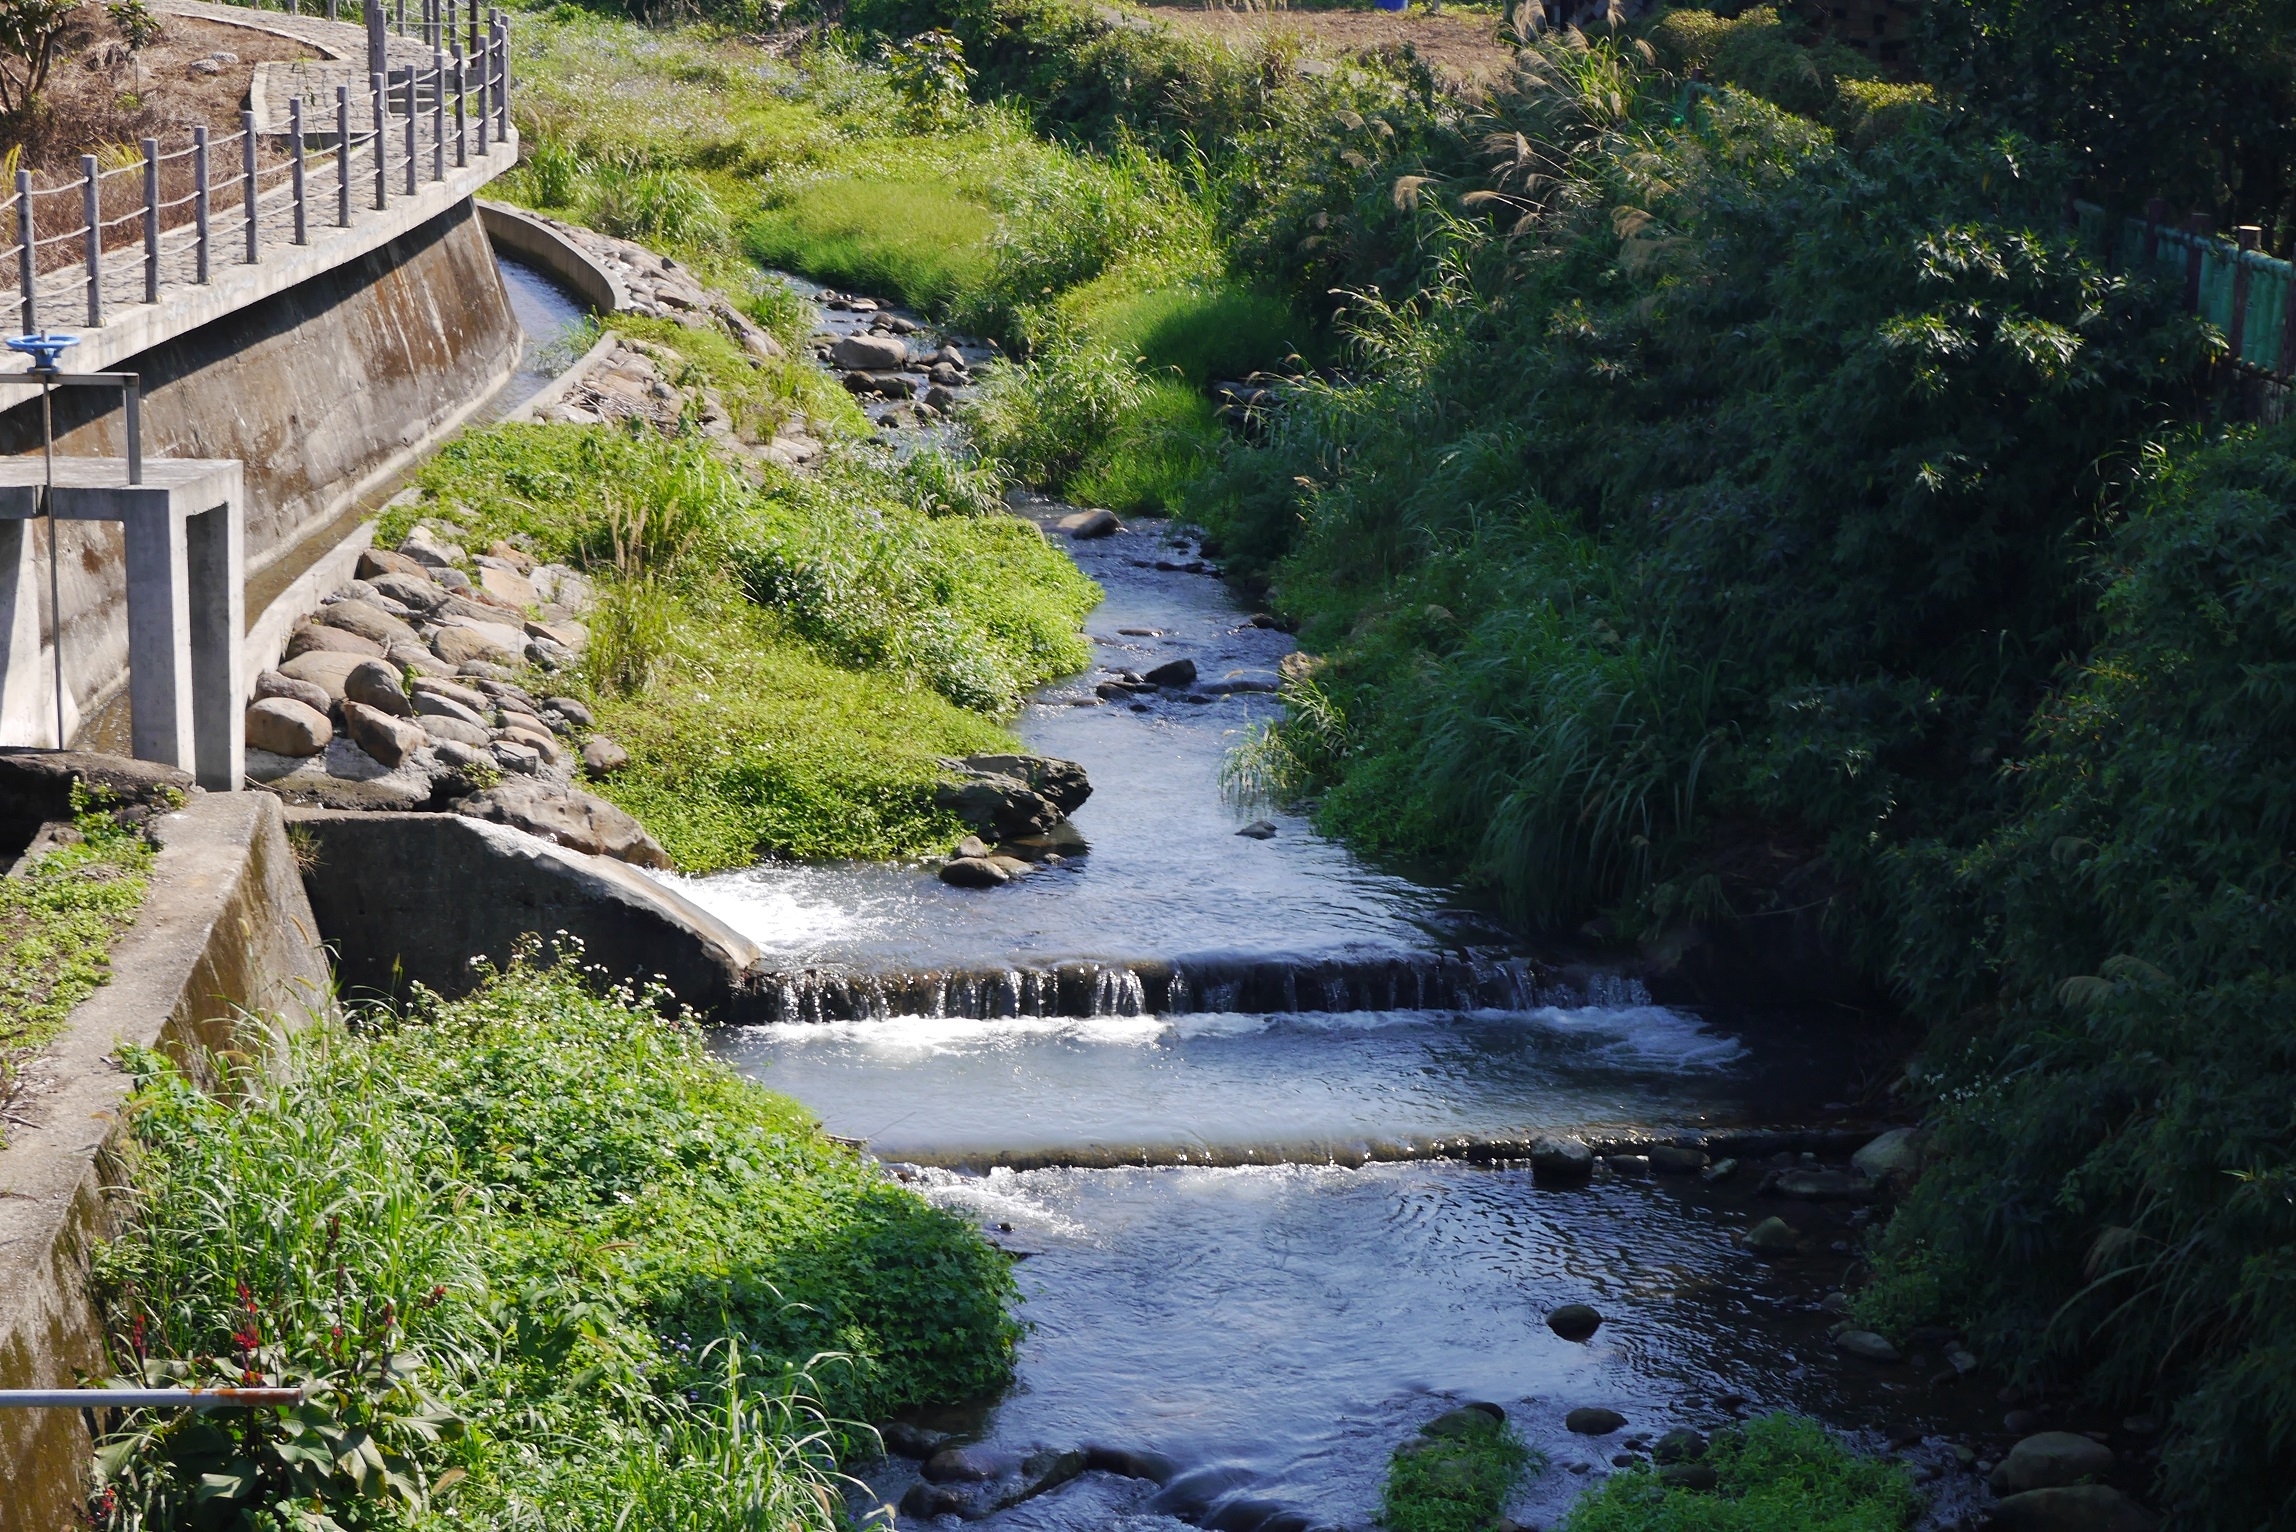 增設引水灌溉系統確保下游灌溉功能並保有原來生態河川環境